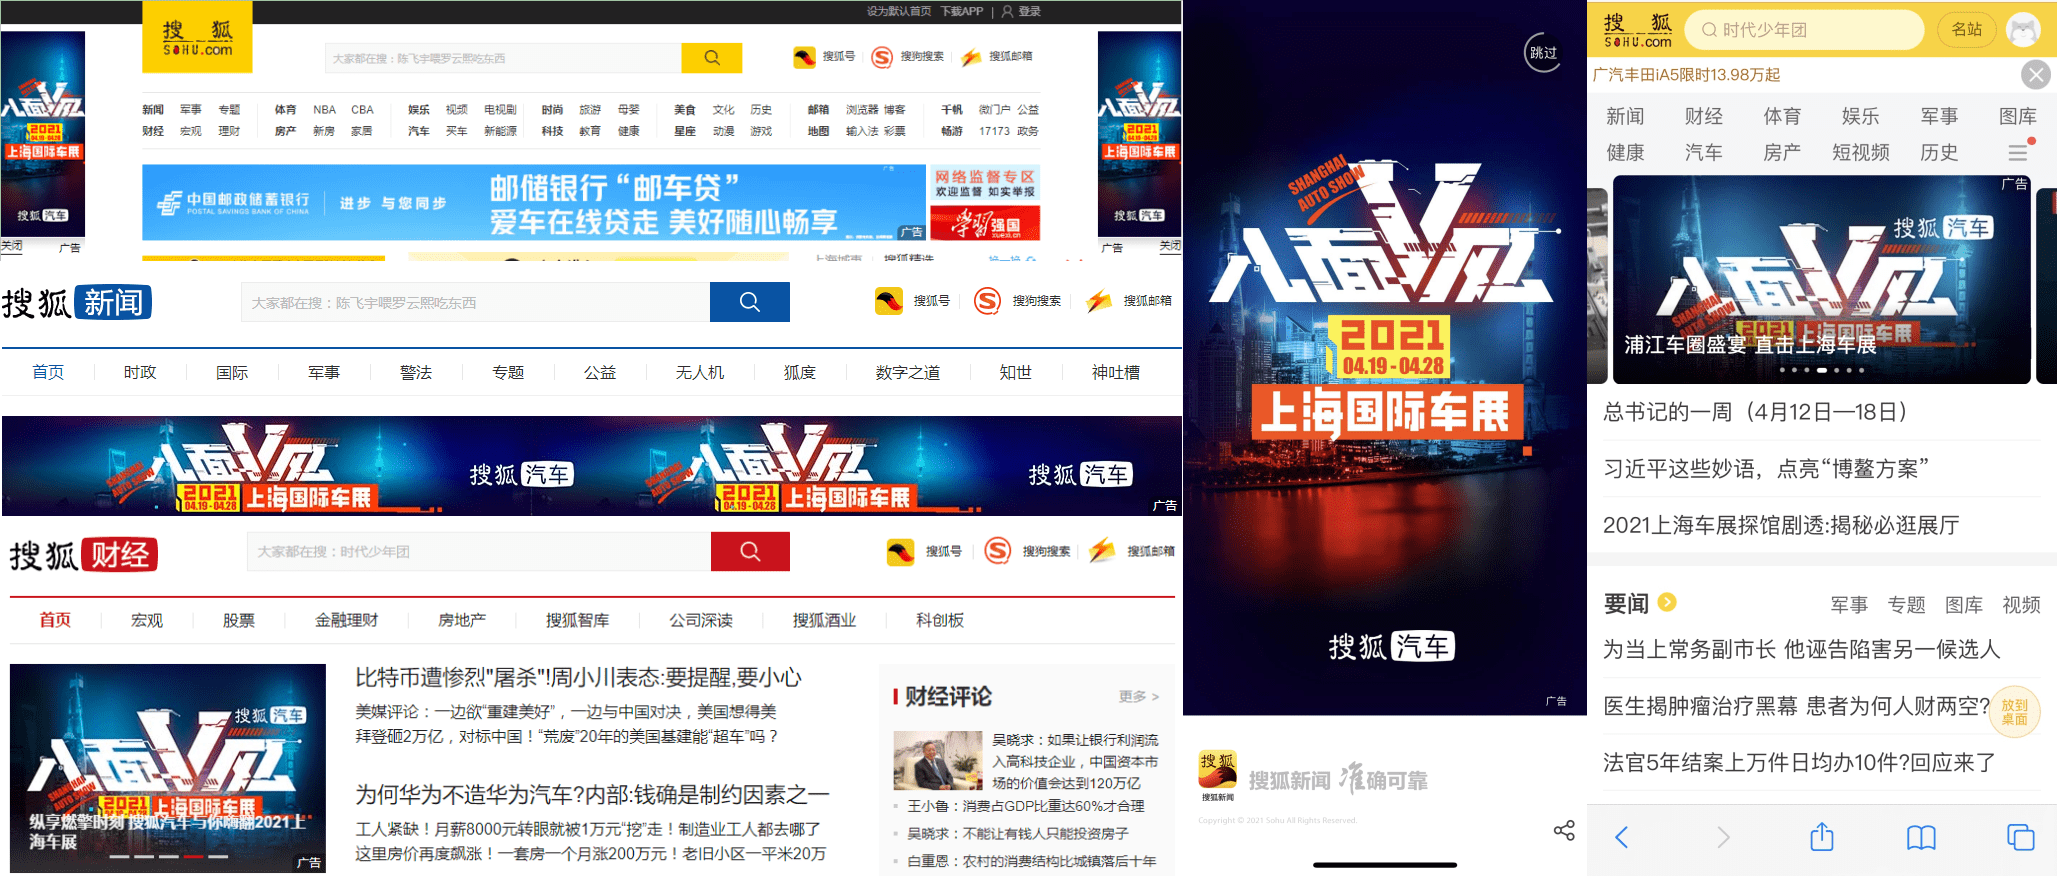 立即下载搜狐新闻客户端搜狐新闻客户端官网电脑版下载